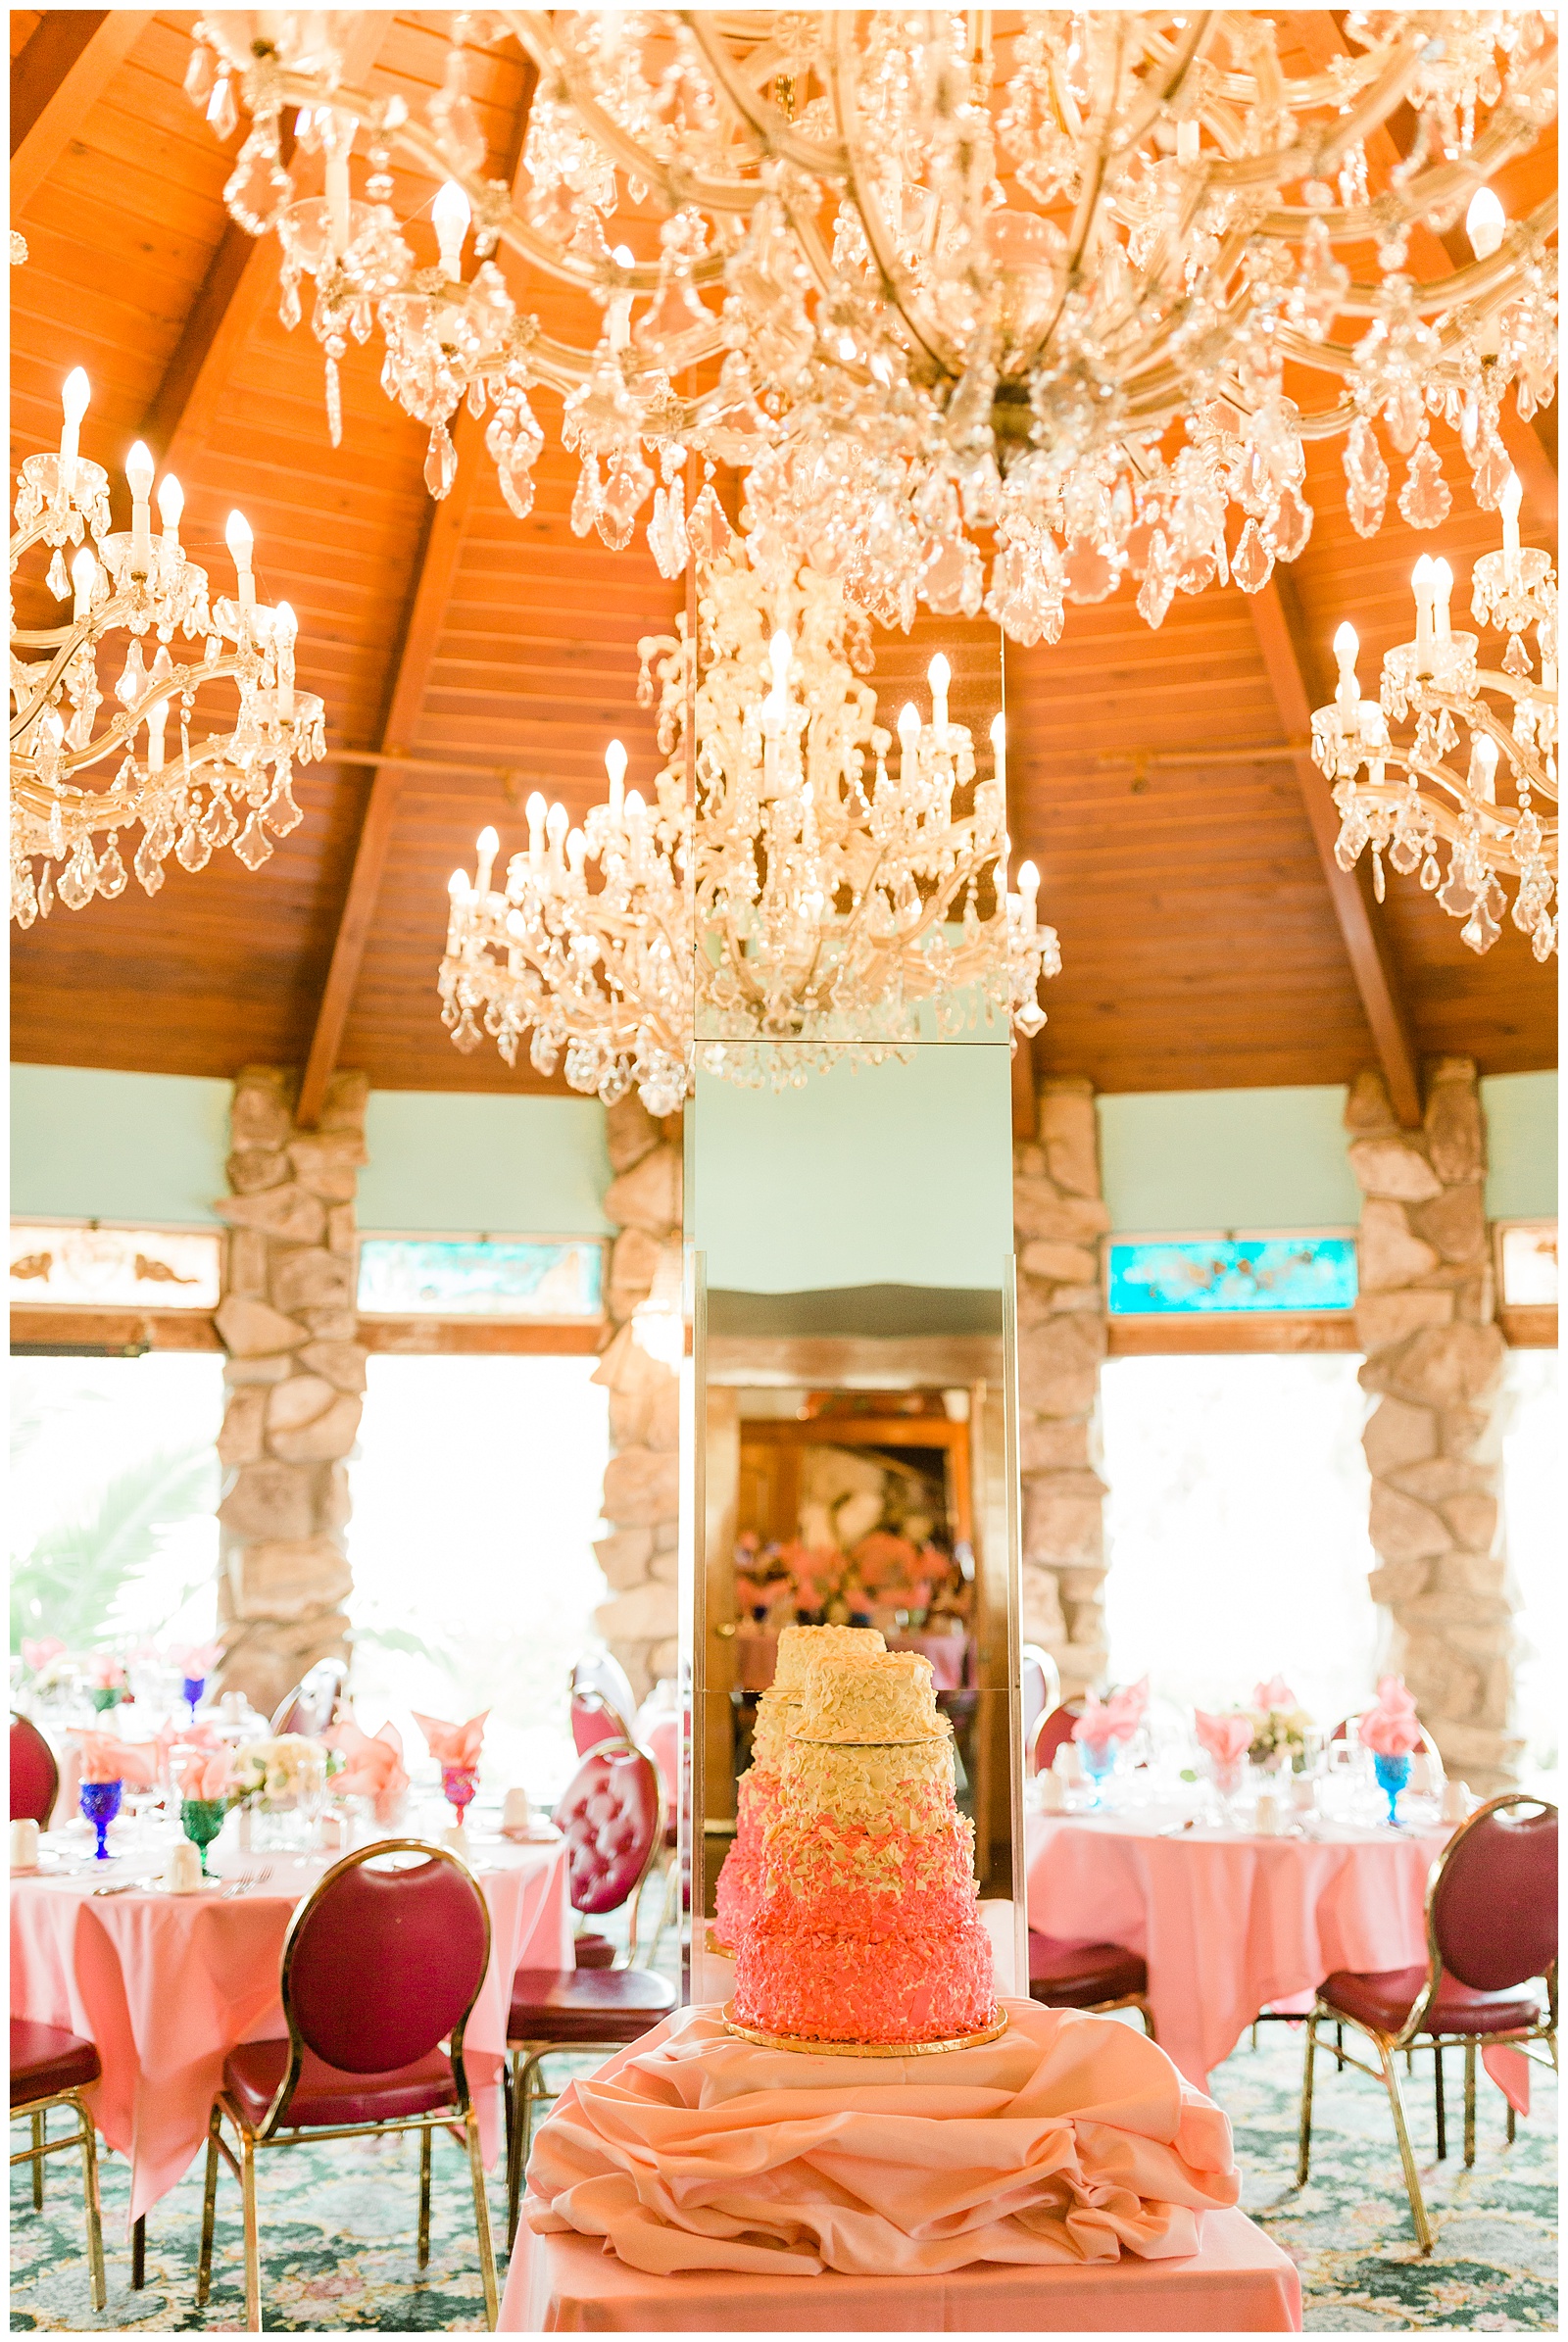 Madonna Inn wedding cake underneath grand chandeliers in the Garden Room